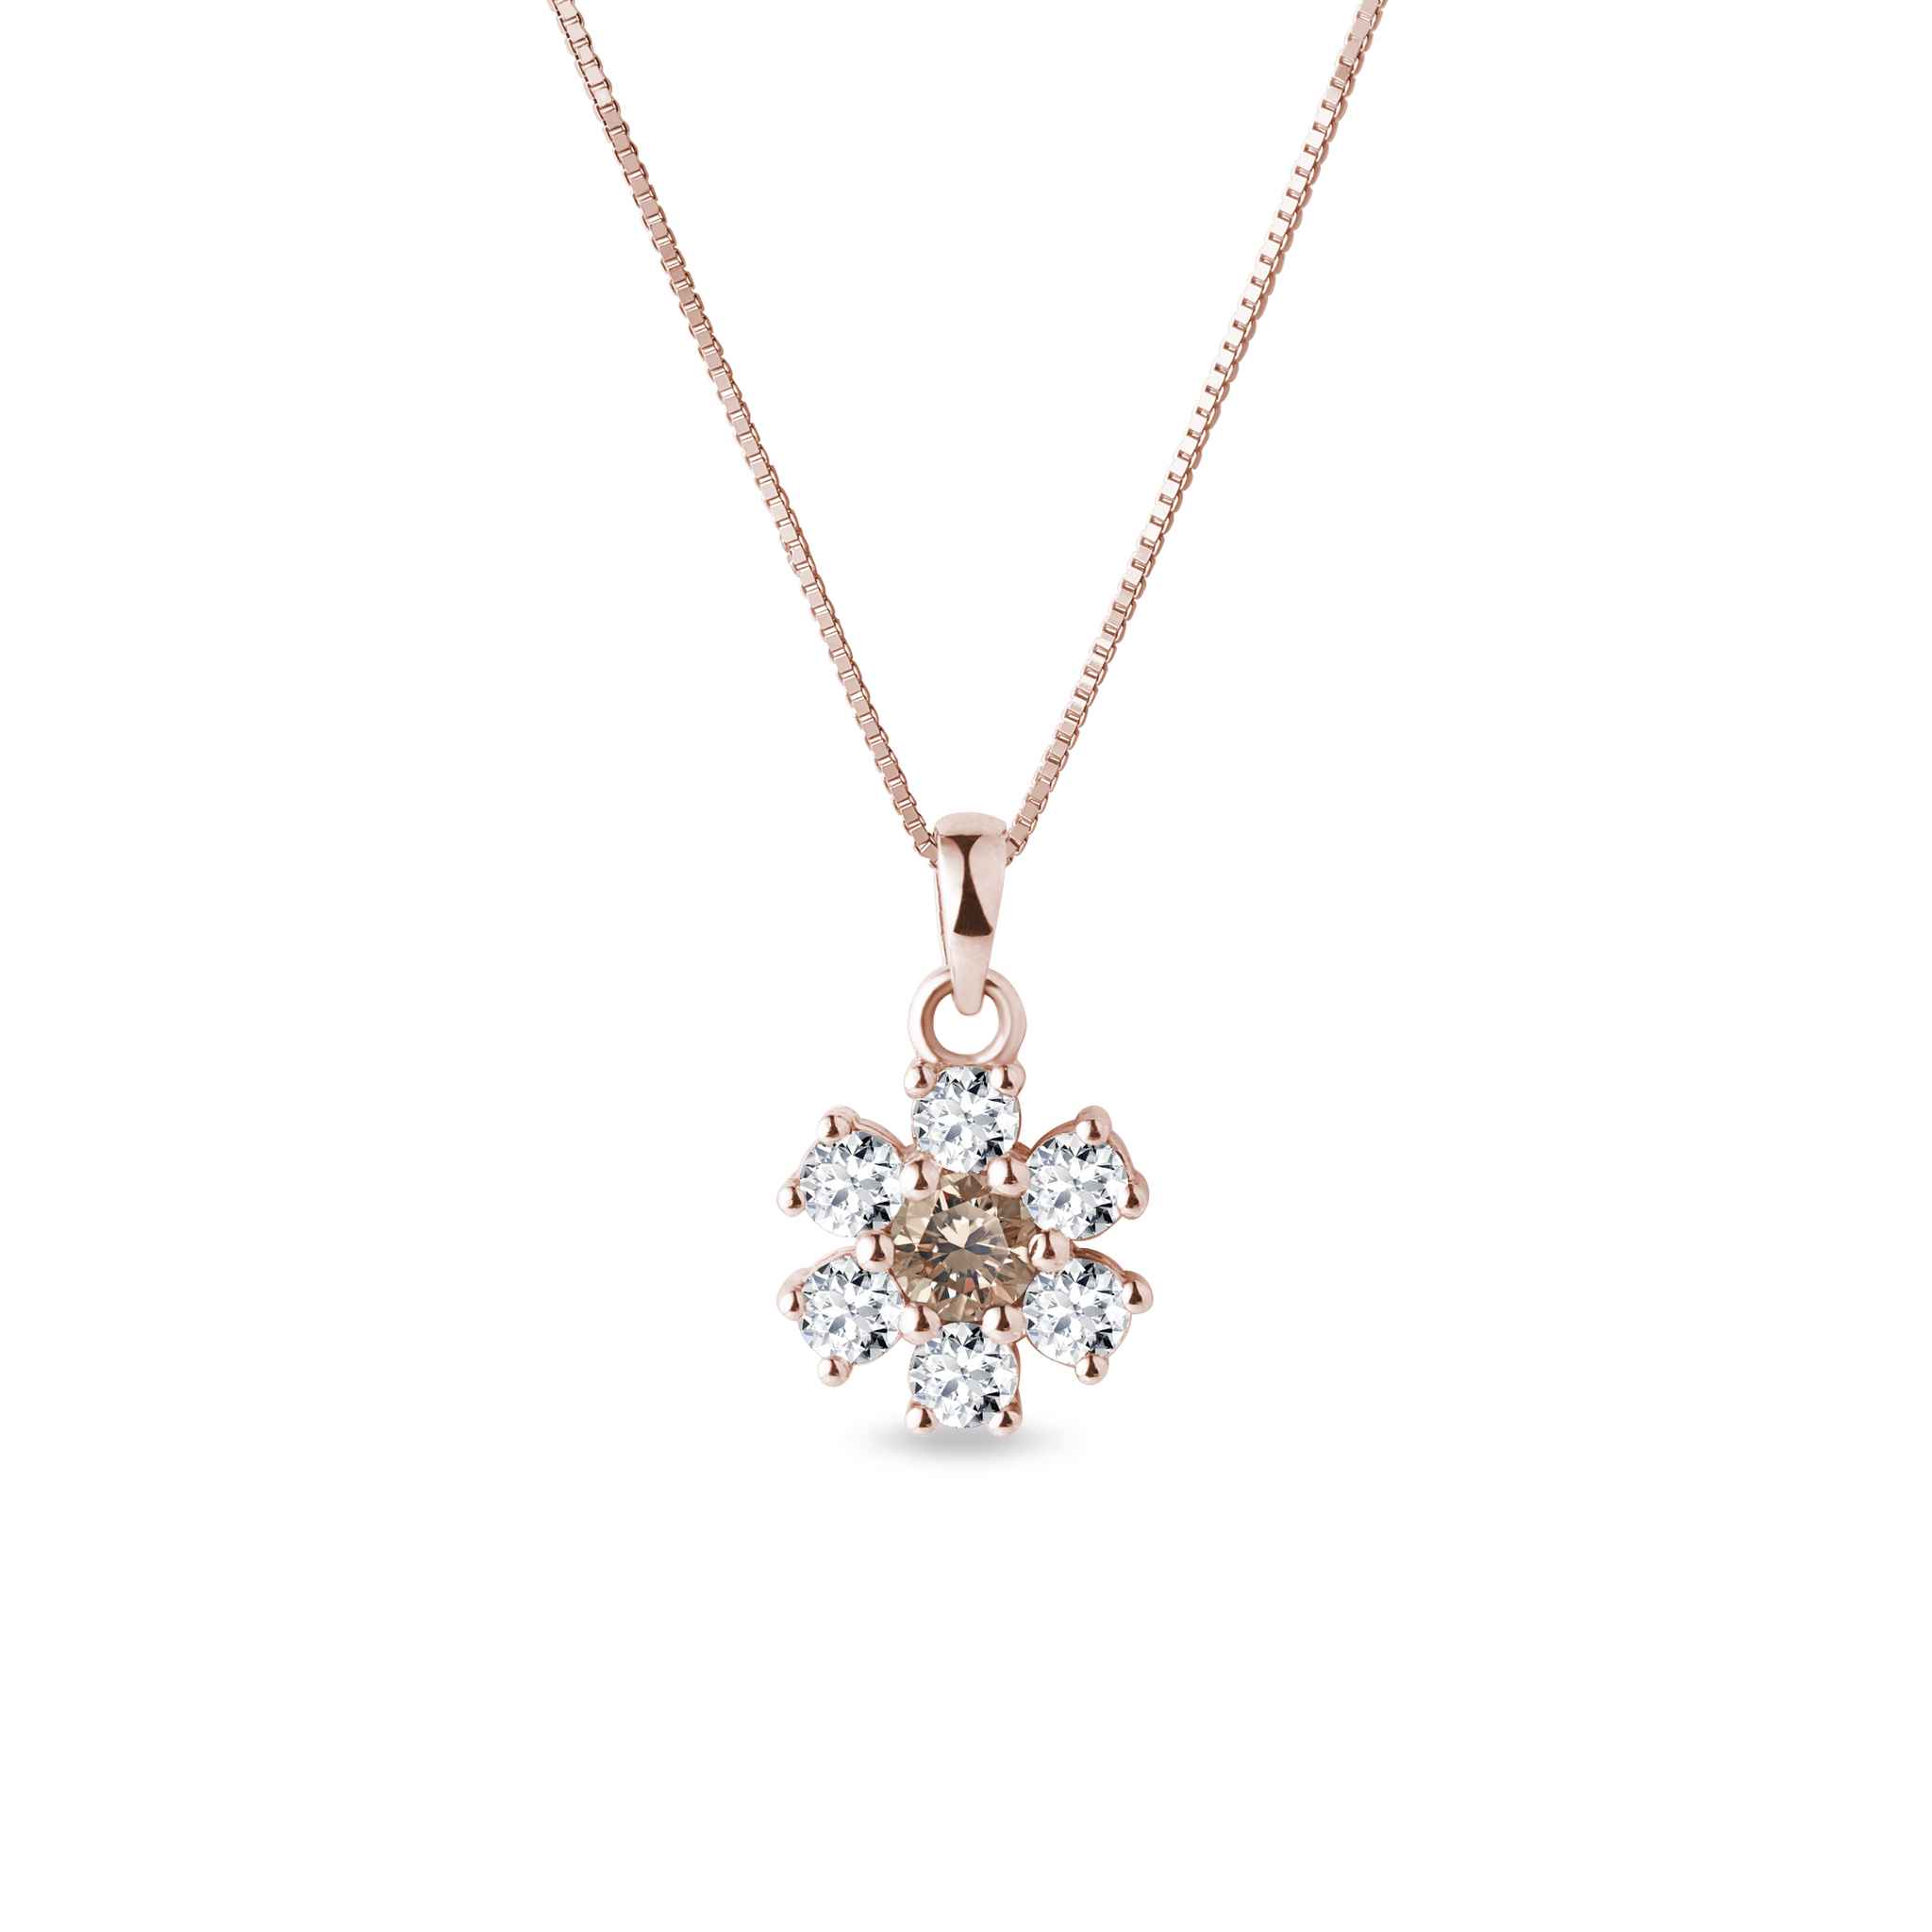 Champagne diamond pendant in 14k rose gold | KLENOTA